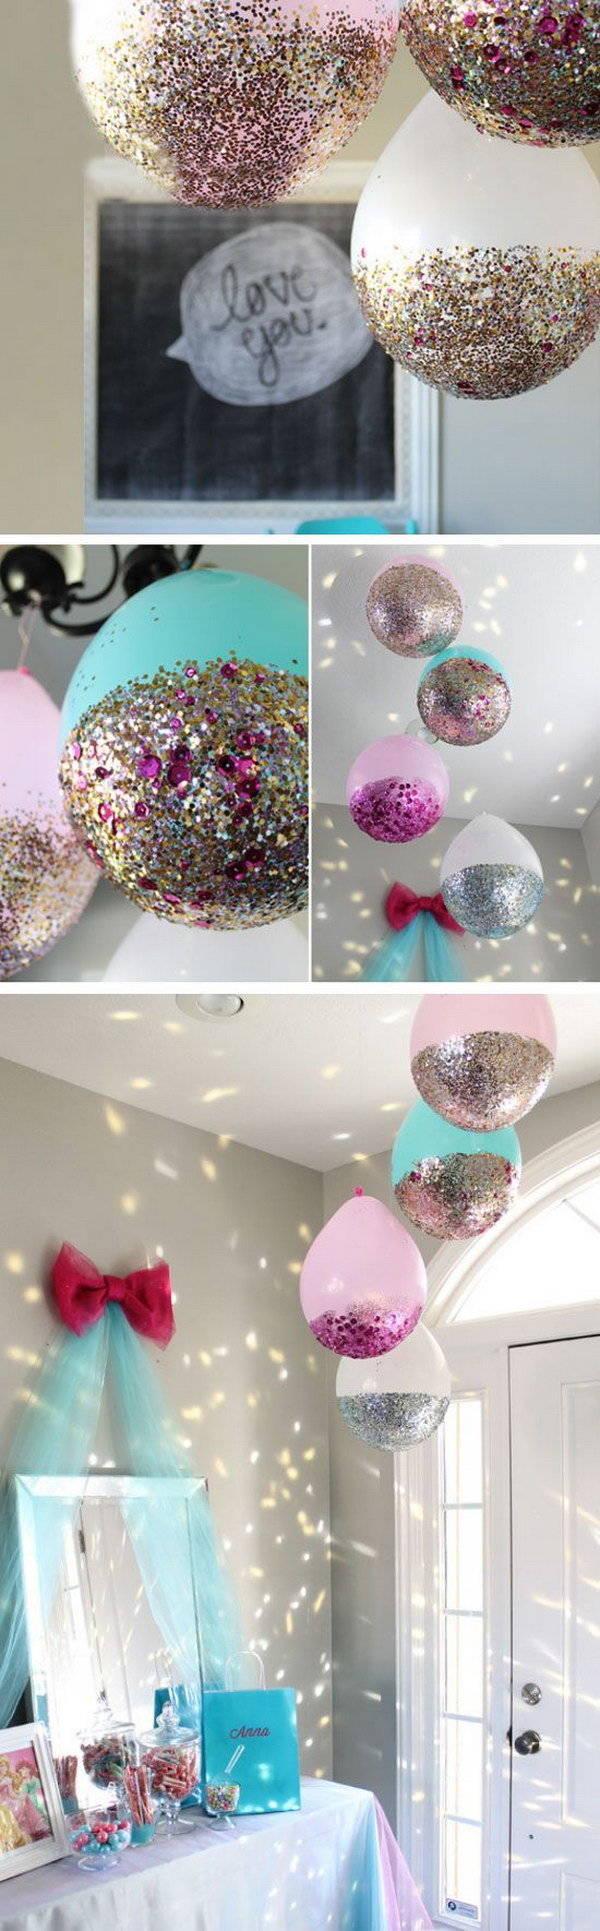 รูปภาพ:http://ideastand.com/wp-content/uploads/2016/04/balloon-decorations/1-balloon-decoration-ideas.jpg